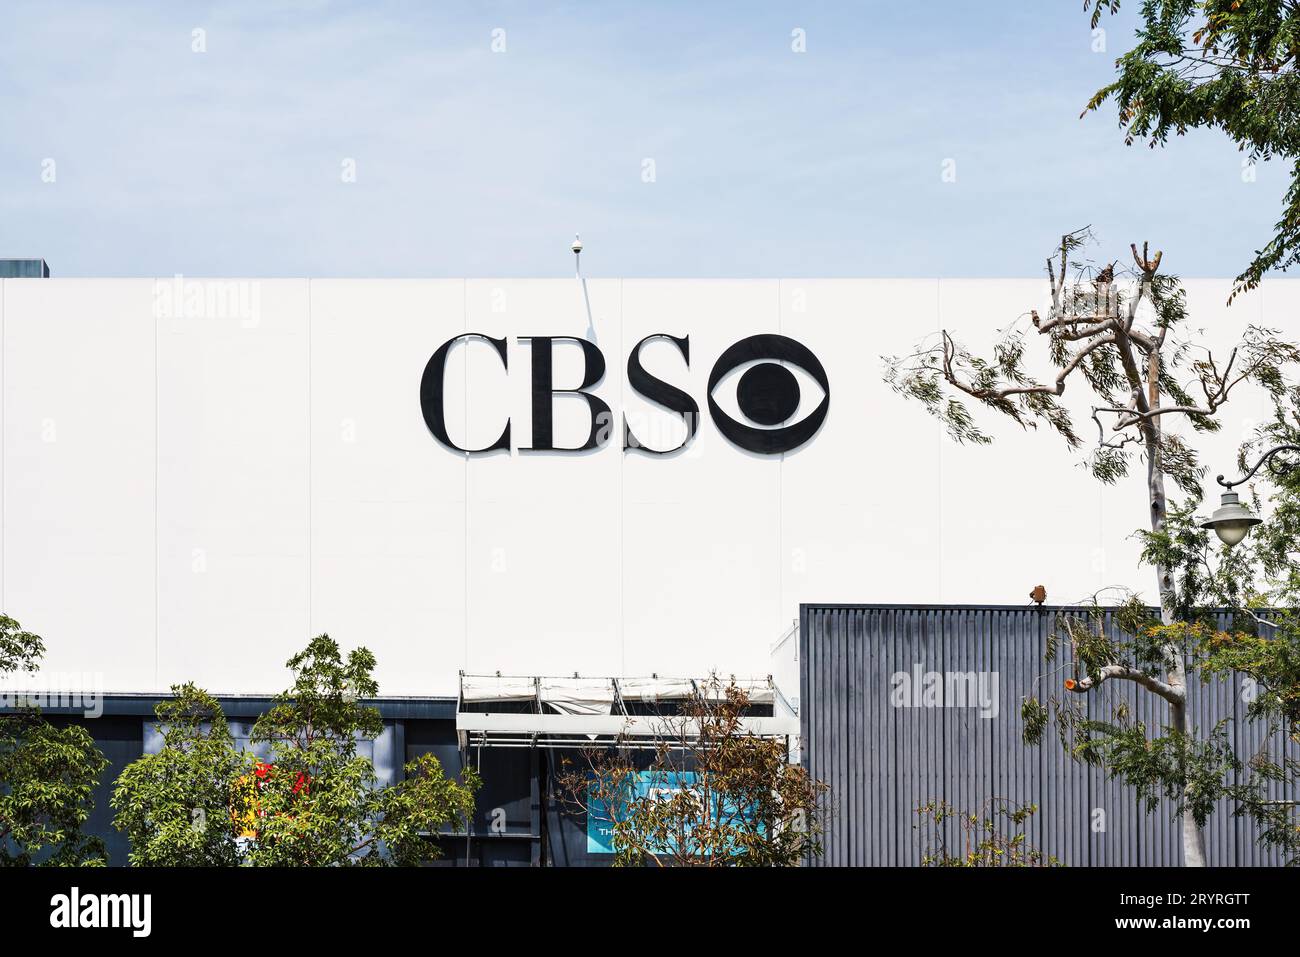 CBS rete televisiva e radiofonica americana a Television City, situata nel quartiere Fairfax di Los Angeles, California, USA. Foto Stock